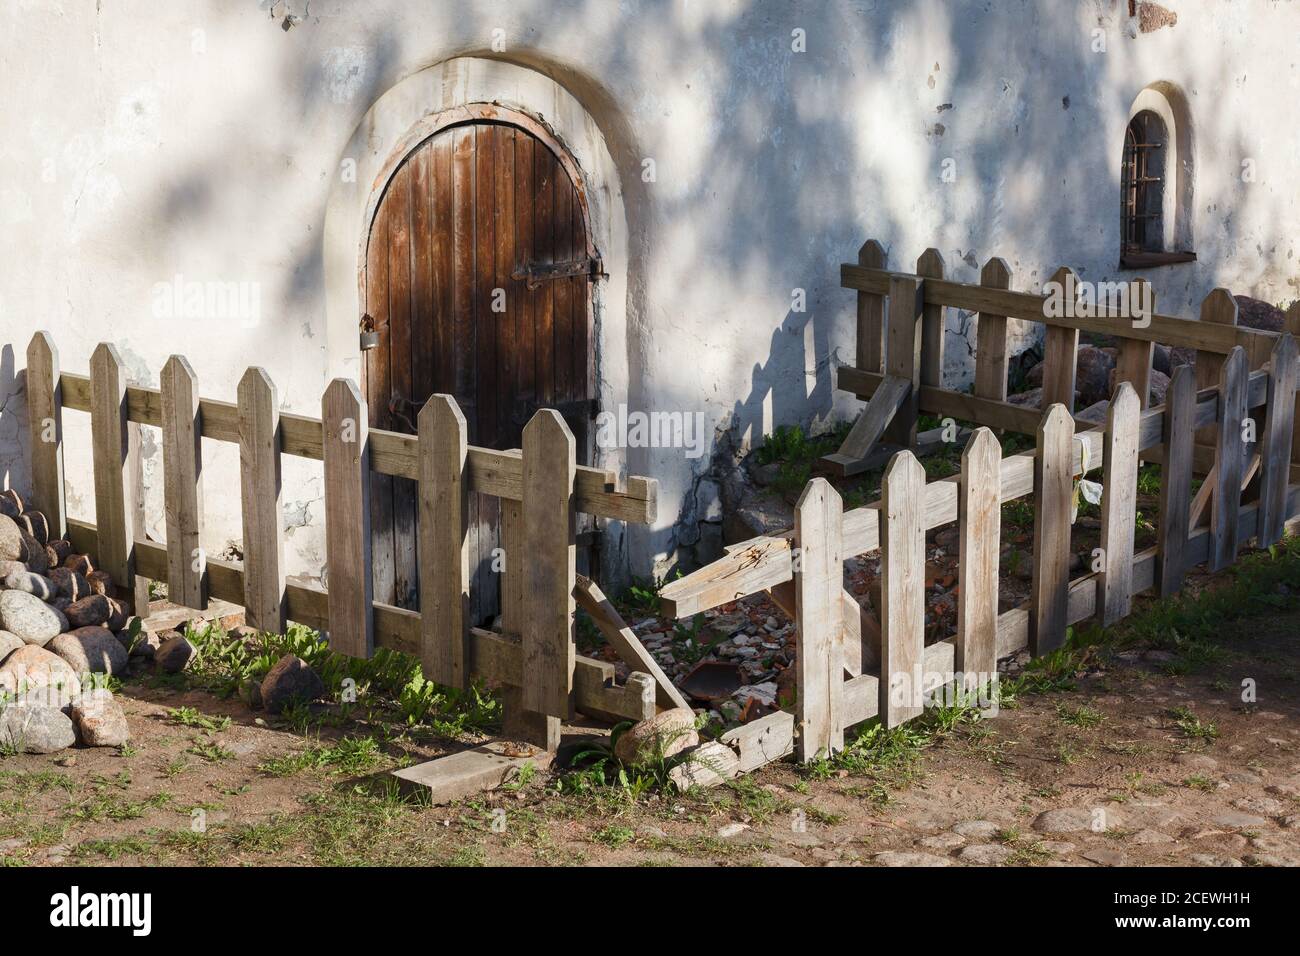 Locked wooden fenced monastery door, monastery yard in evening, rural scene in Europe Stock Photo